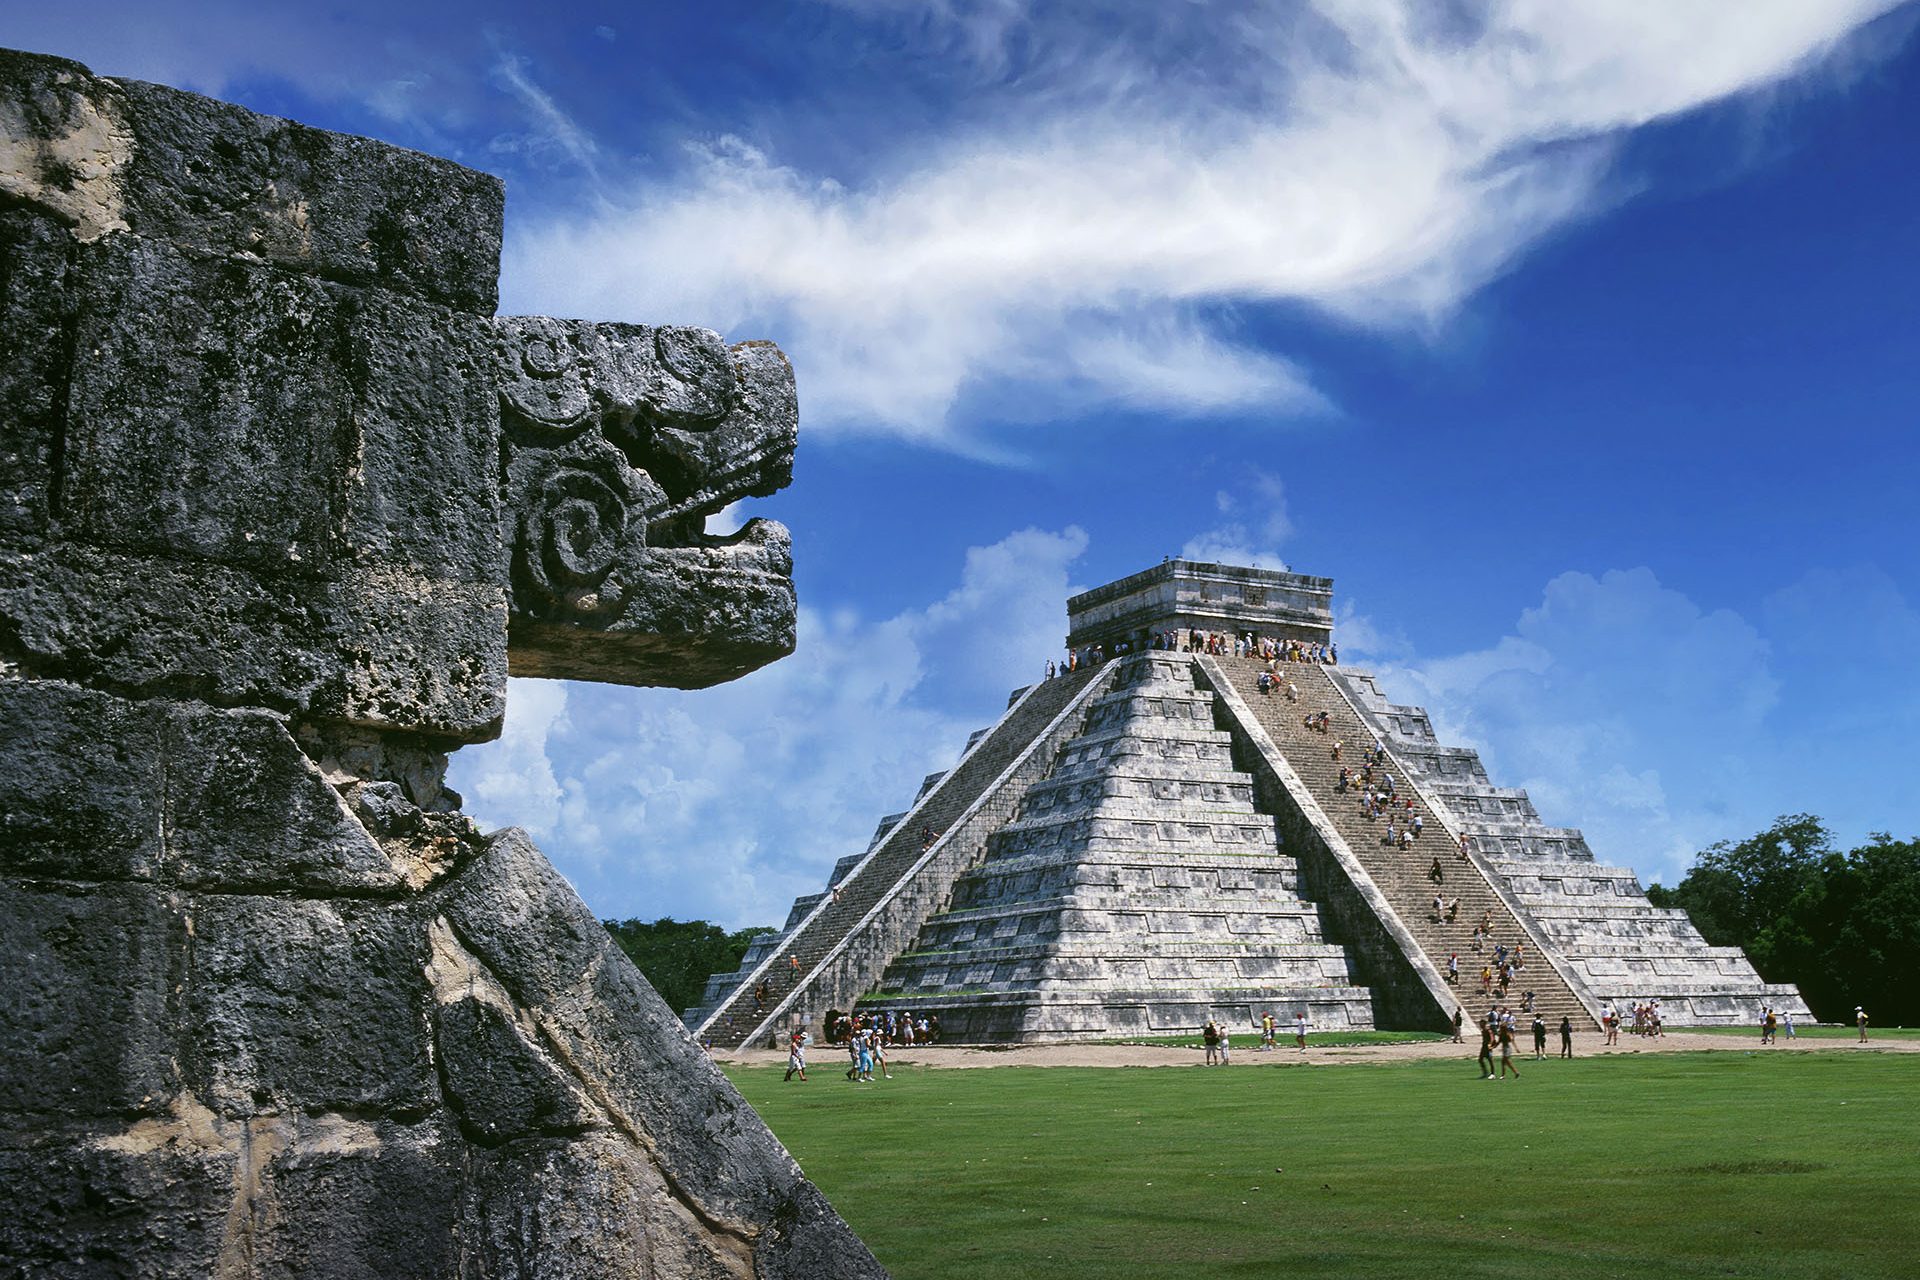 Más de 100 cuerpos en el chultún: revelados los crueles rituales maya de Chichén Itzá